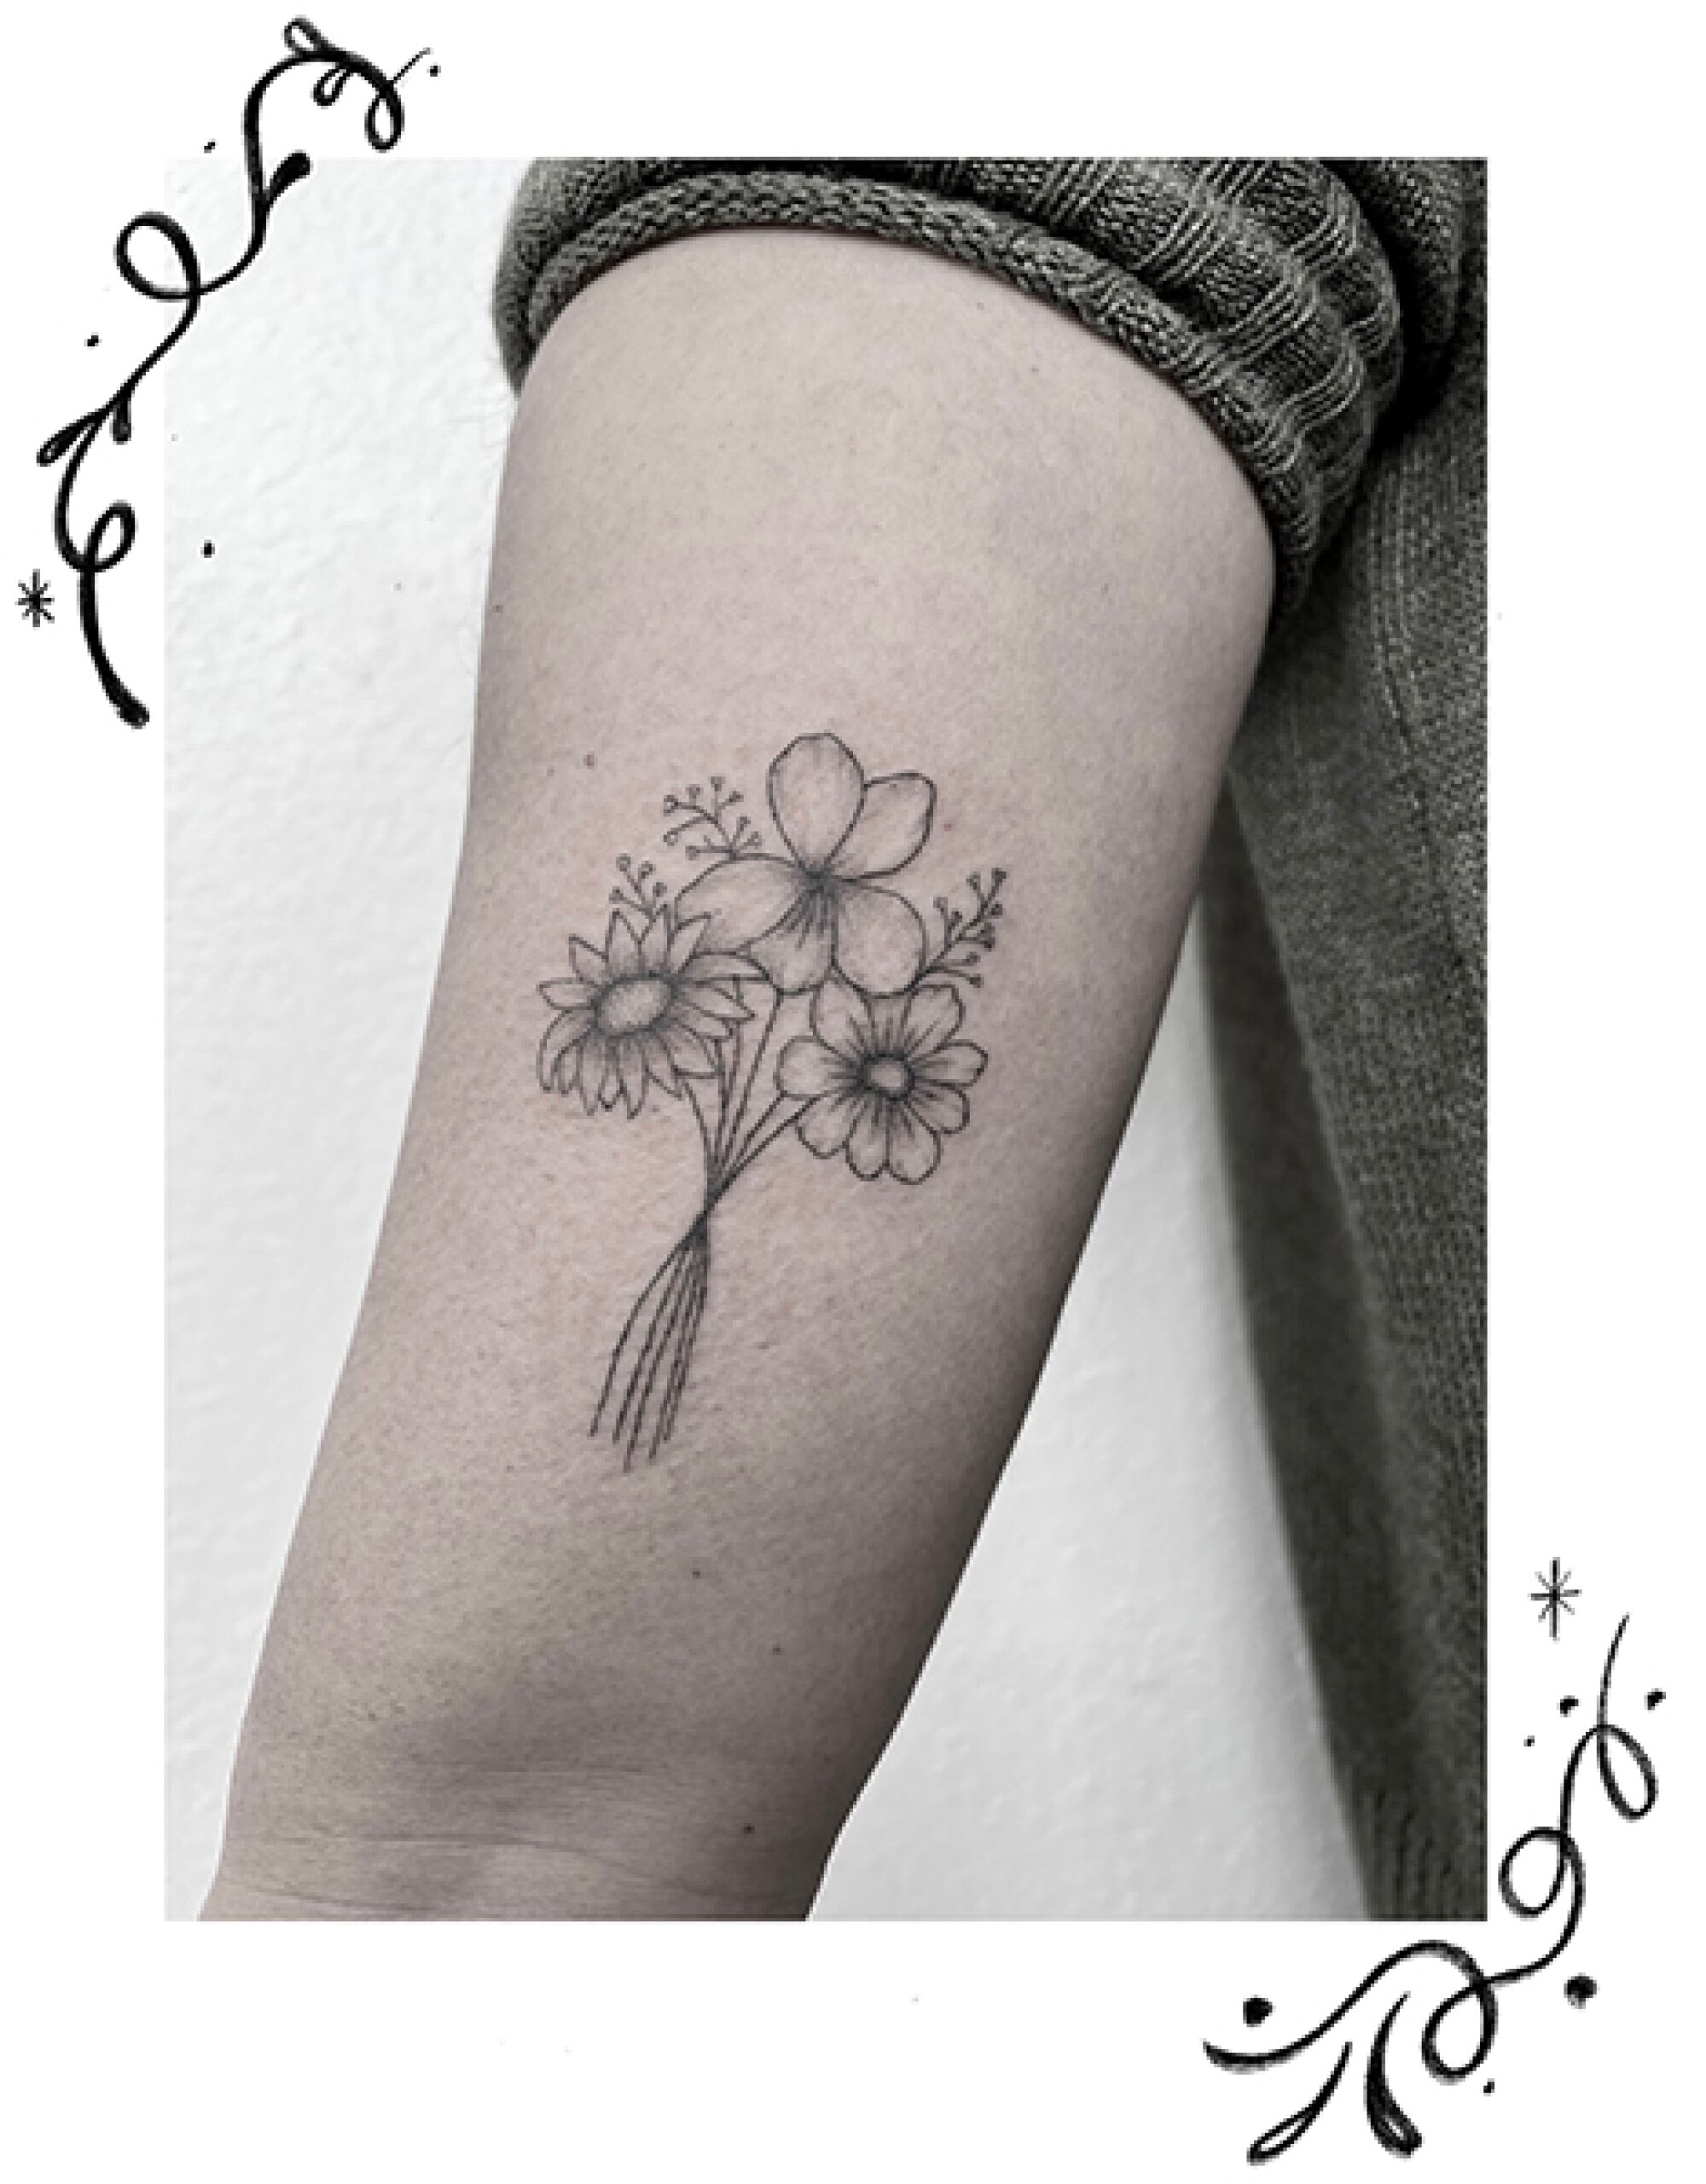 Birth flower tattoos on an arm. 